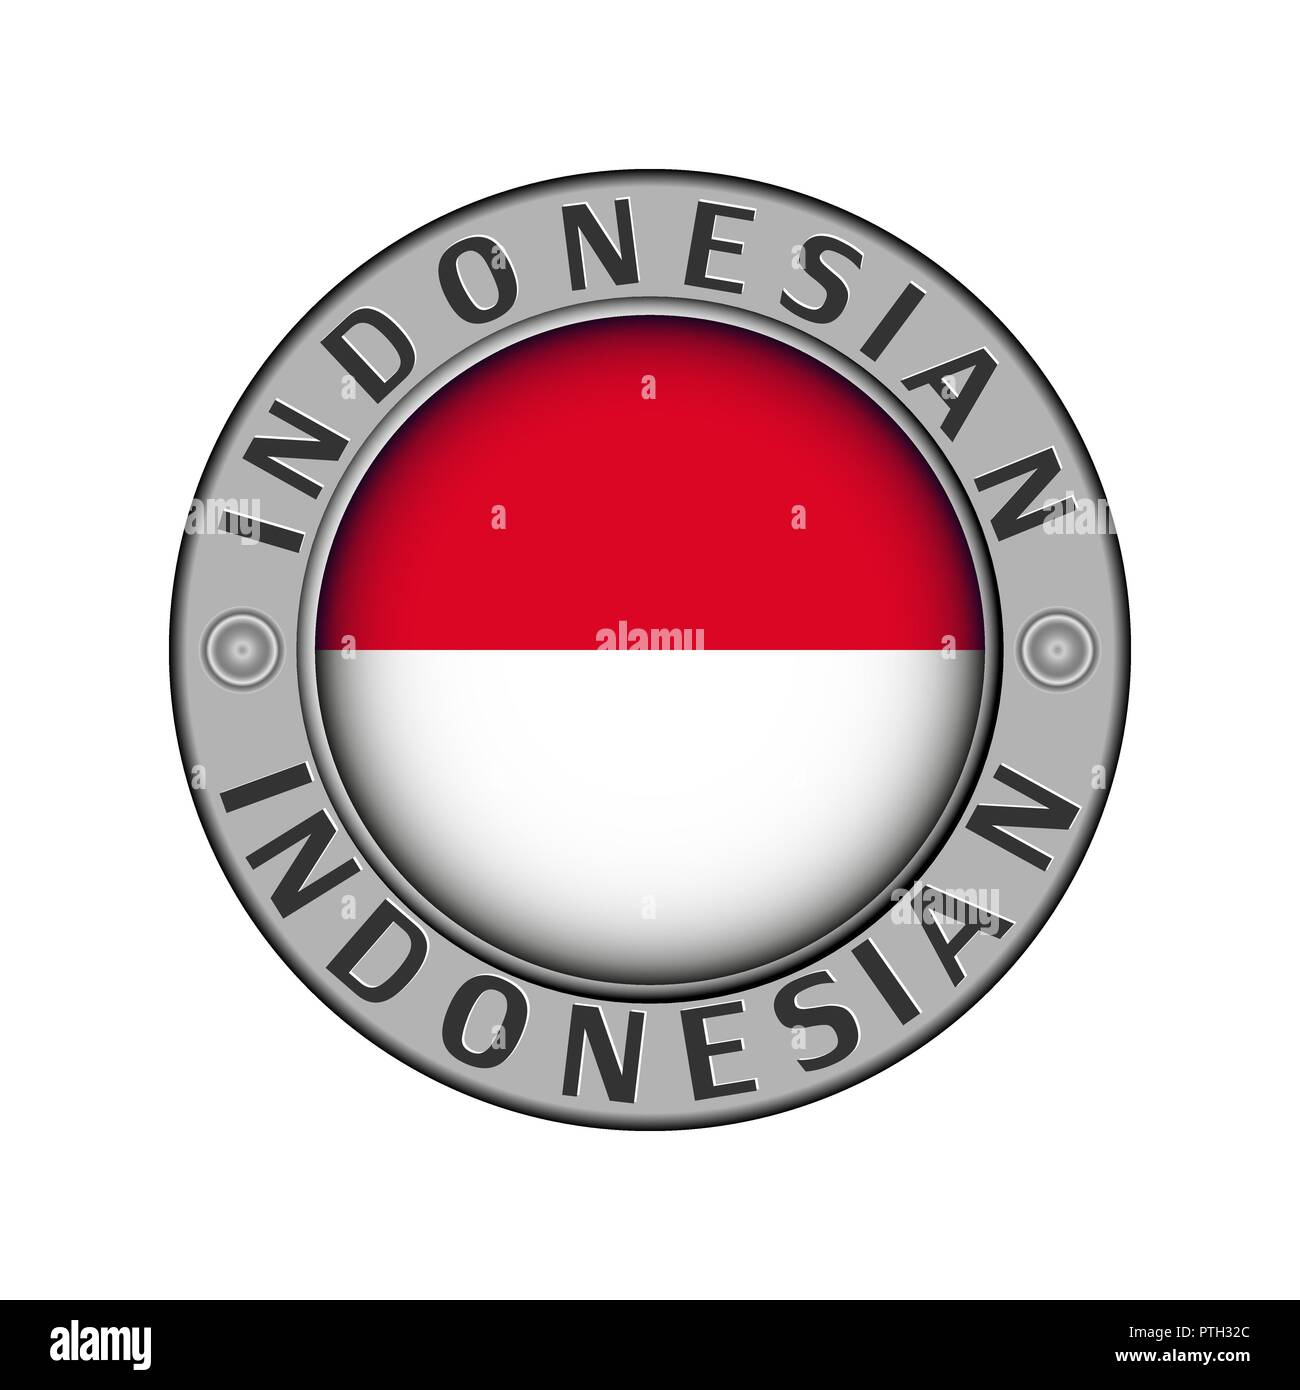 Rotondo di metallo medaglione con il nome del paese di Indonesia e un indicatore rotondo nel centro Illustrazione Vettoriale